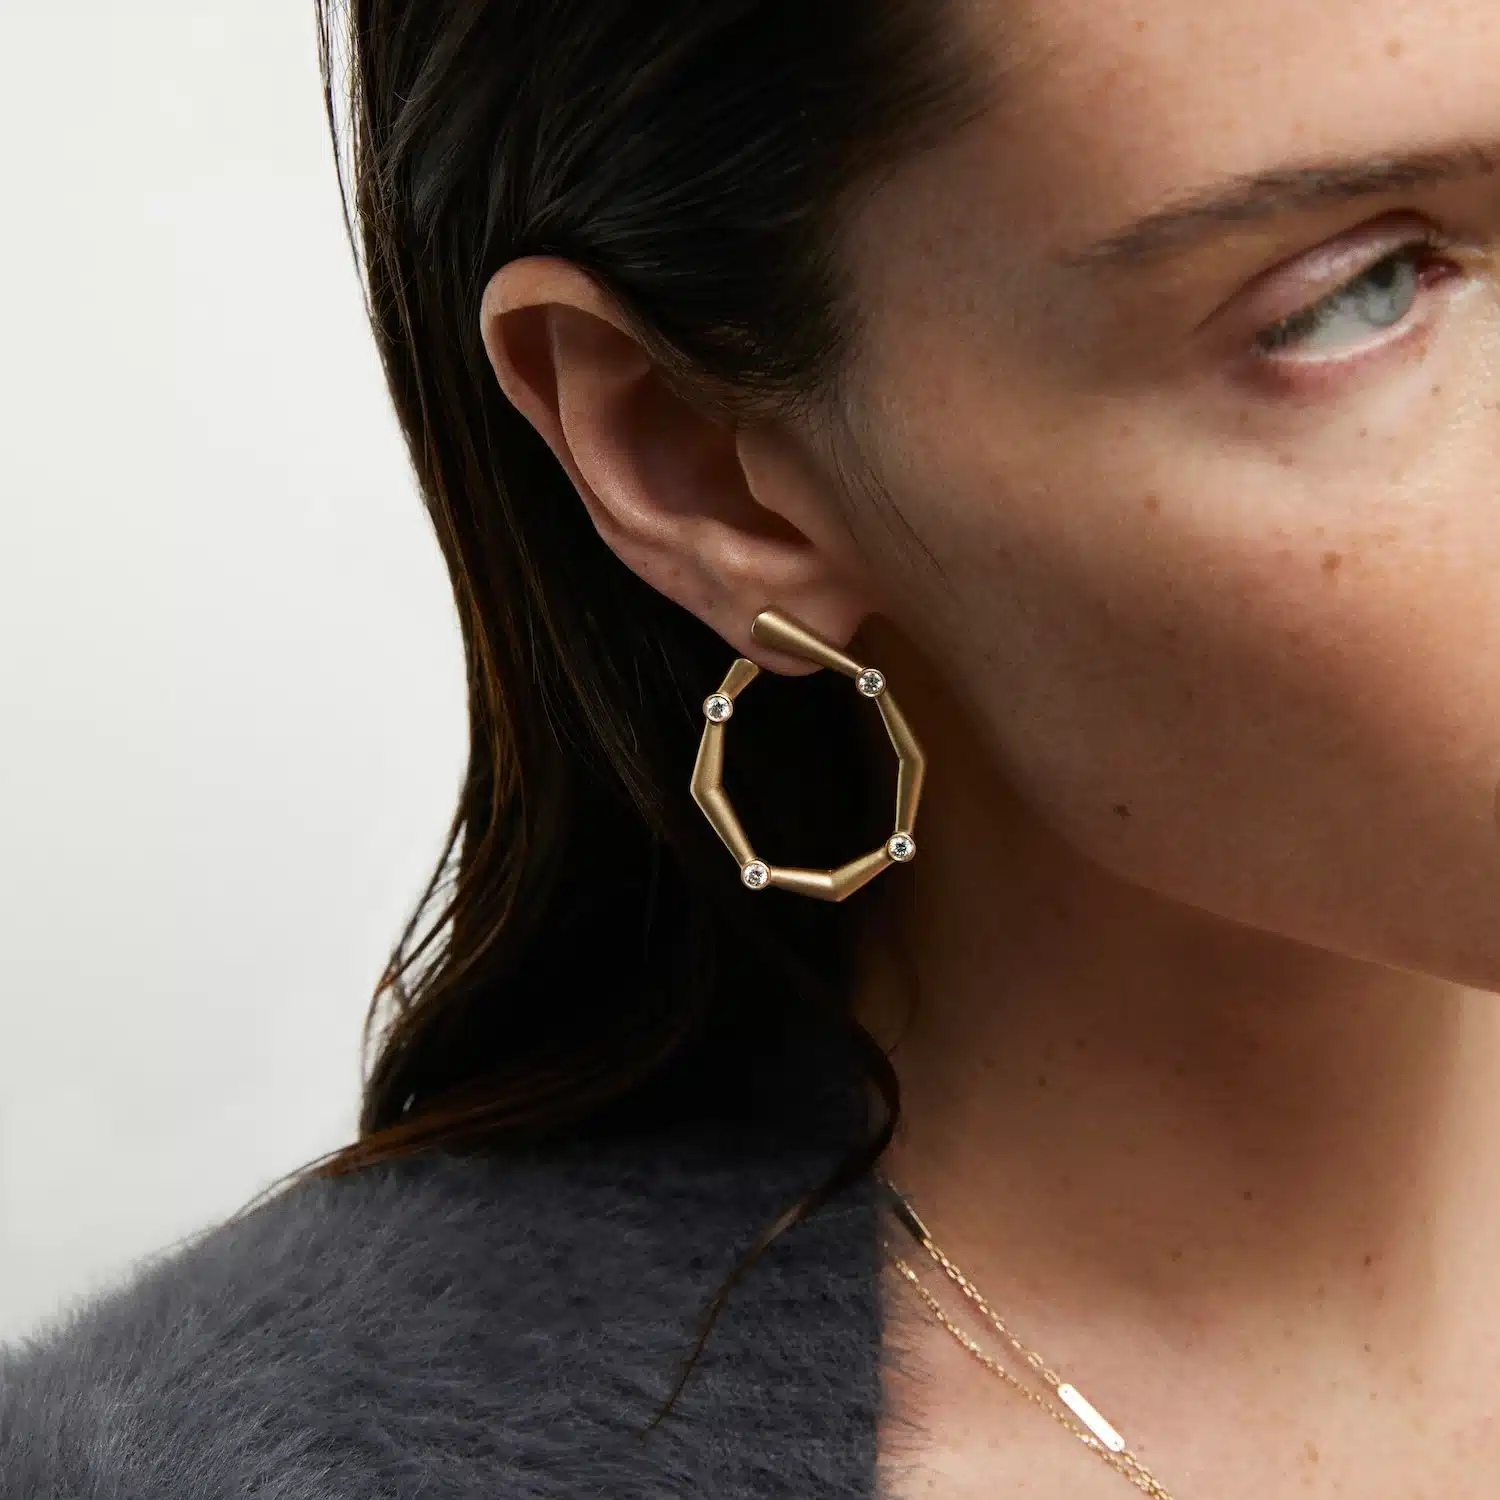 Rita_aria diamond earrings